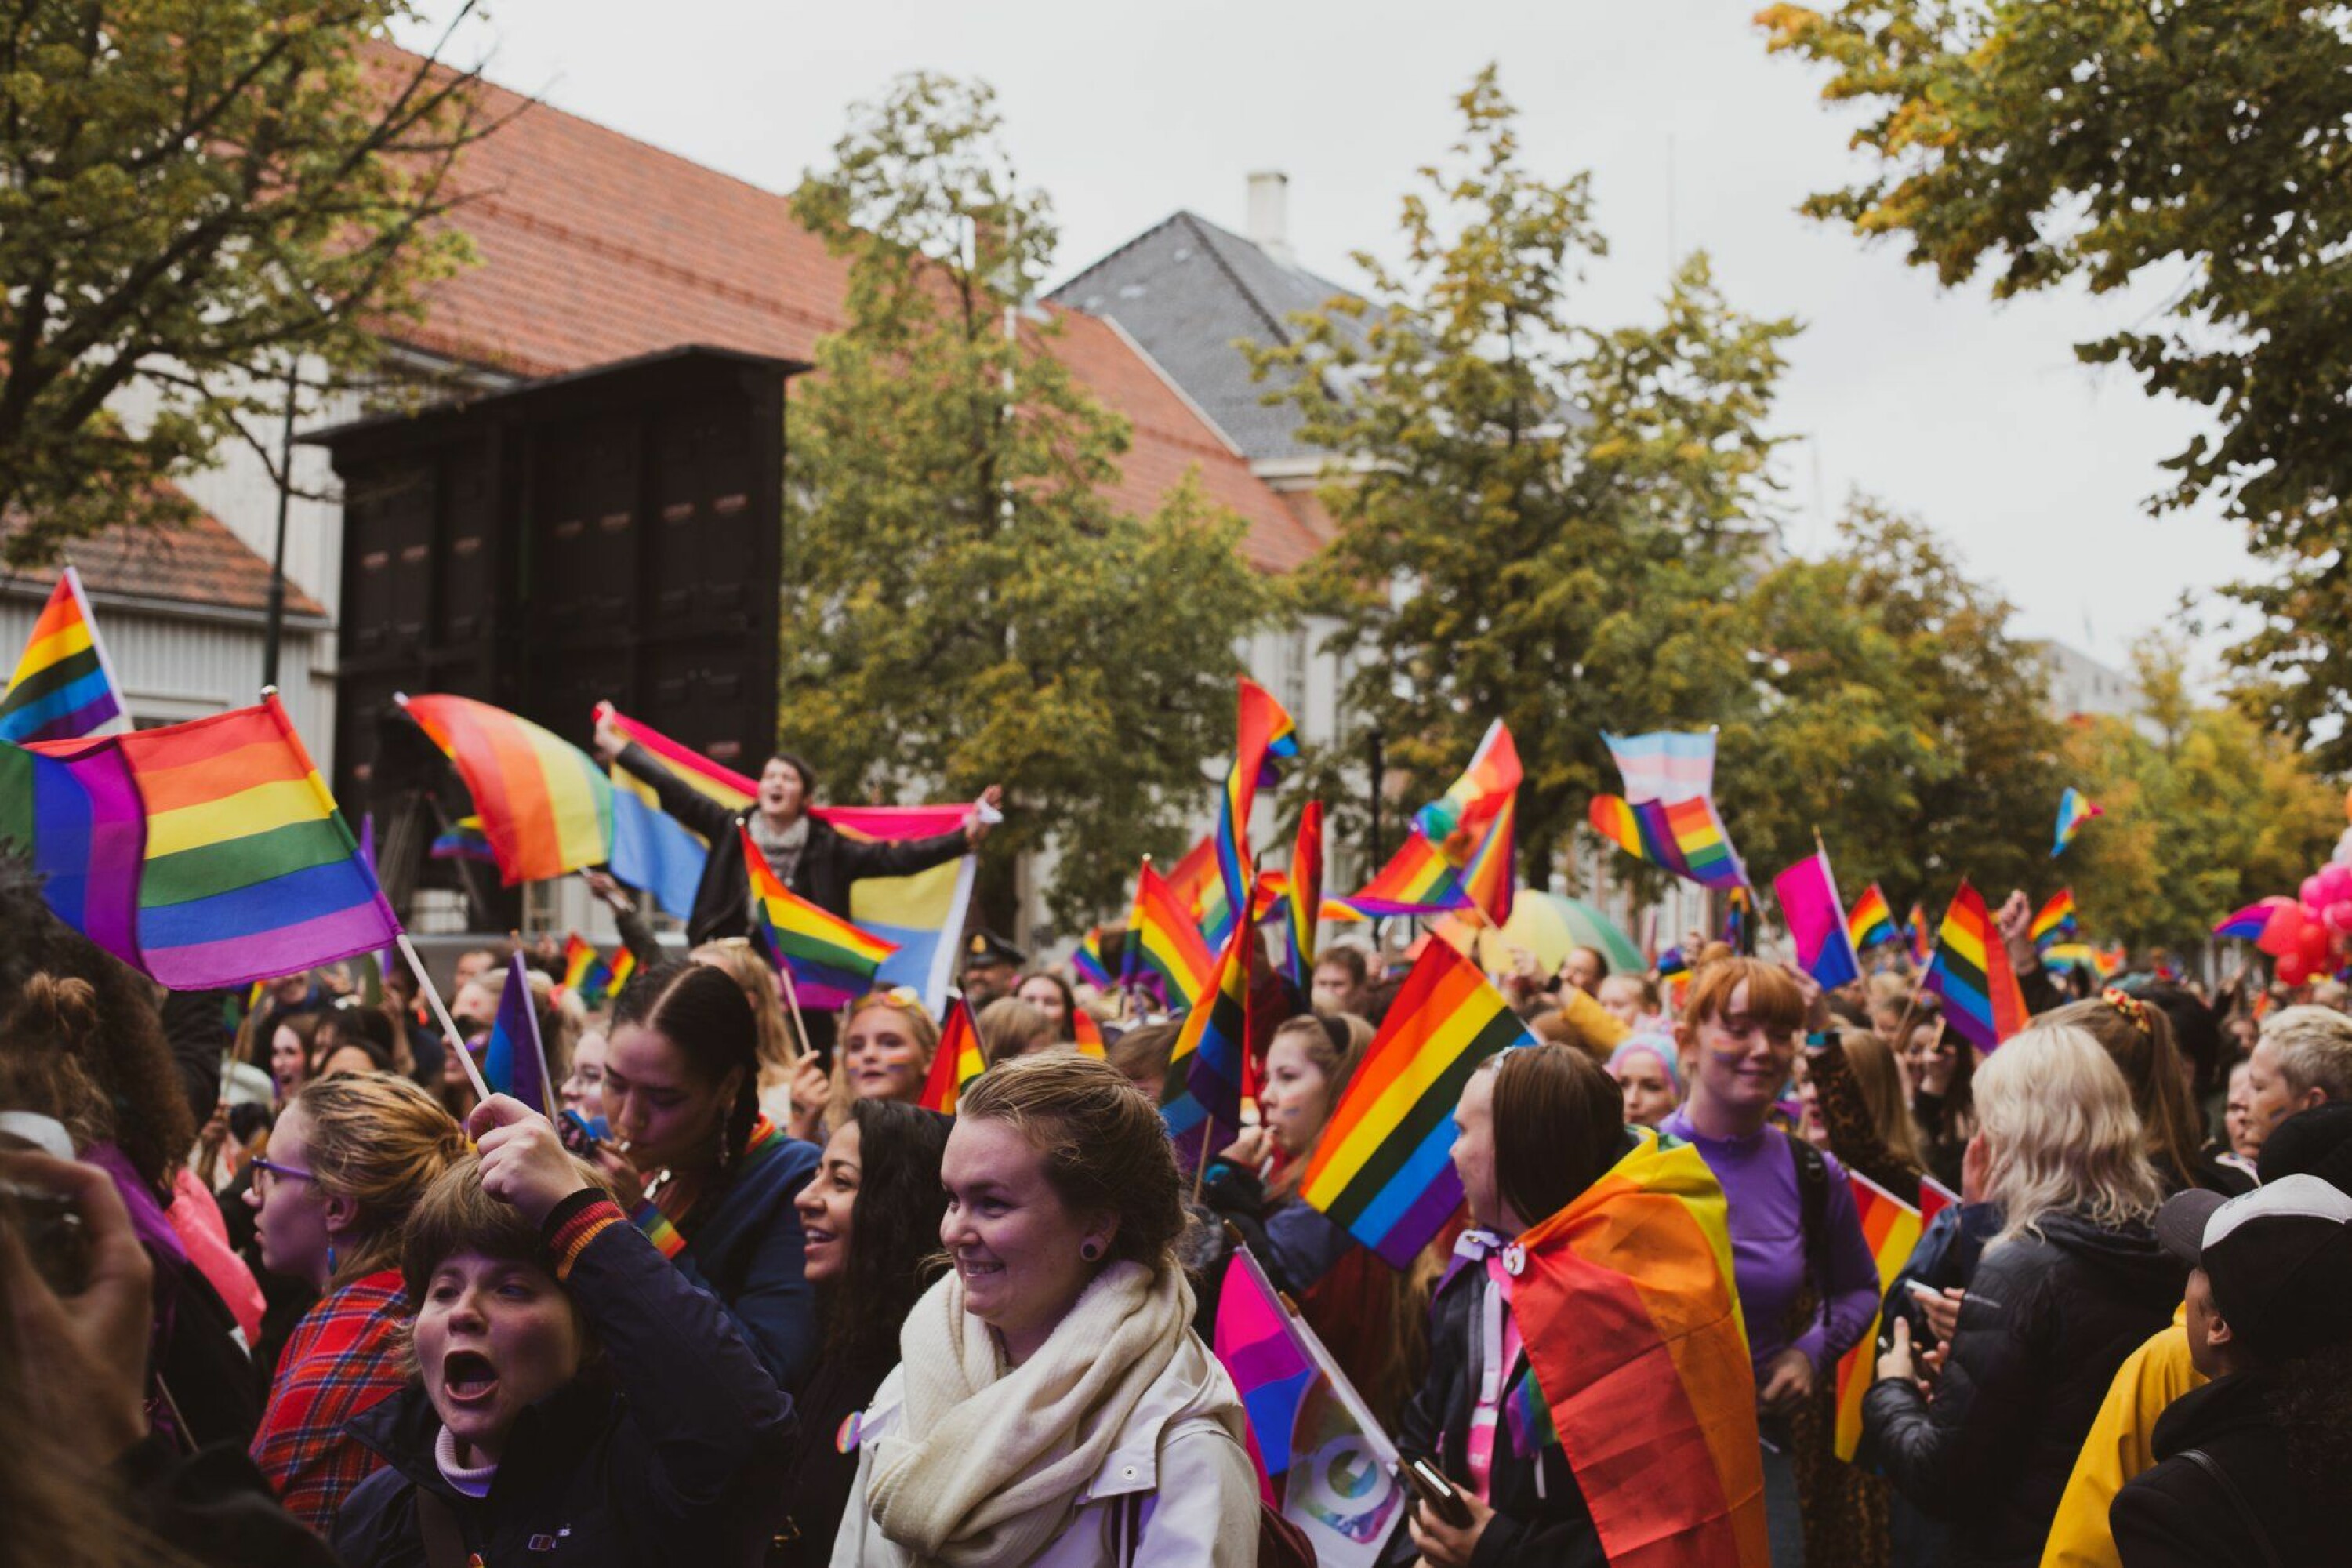 Det var god stemning under Trondheim Pride i 2019. I 2021 forventer vi intet mindre.